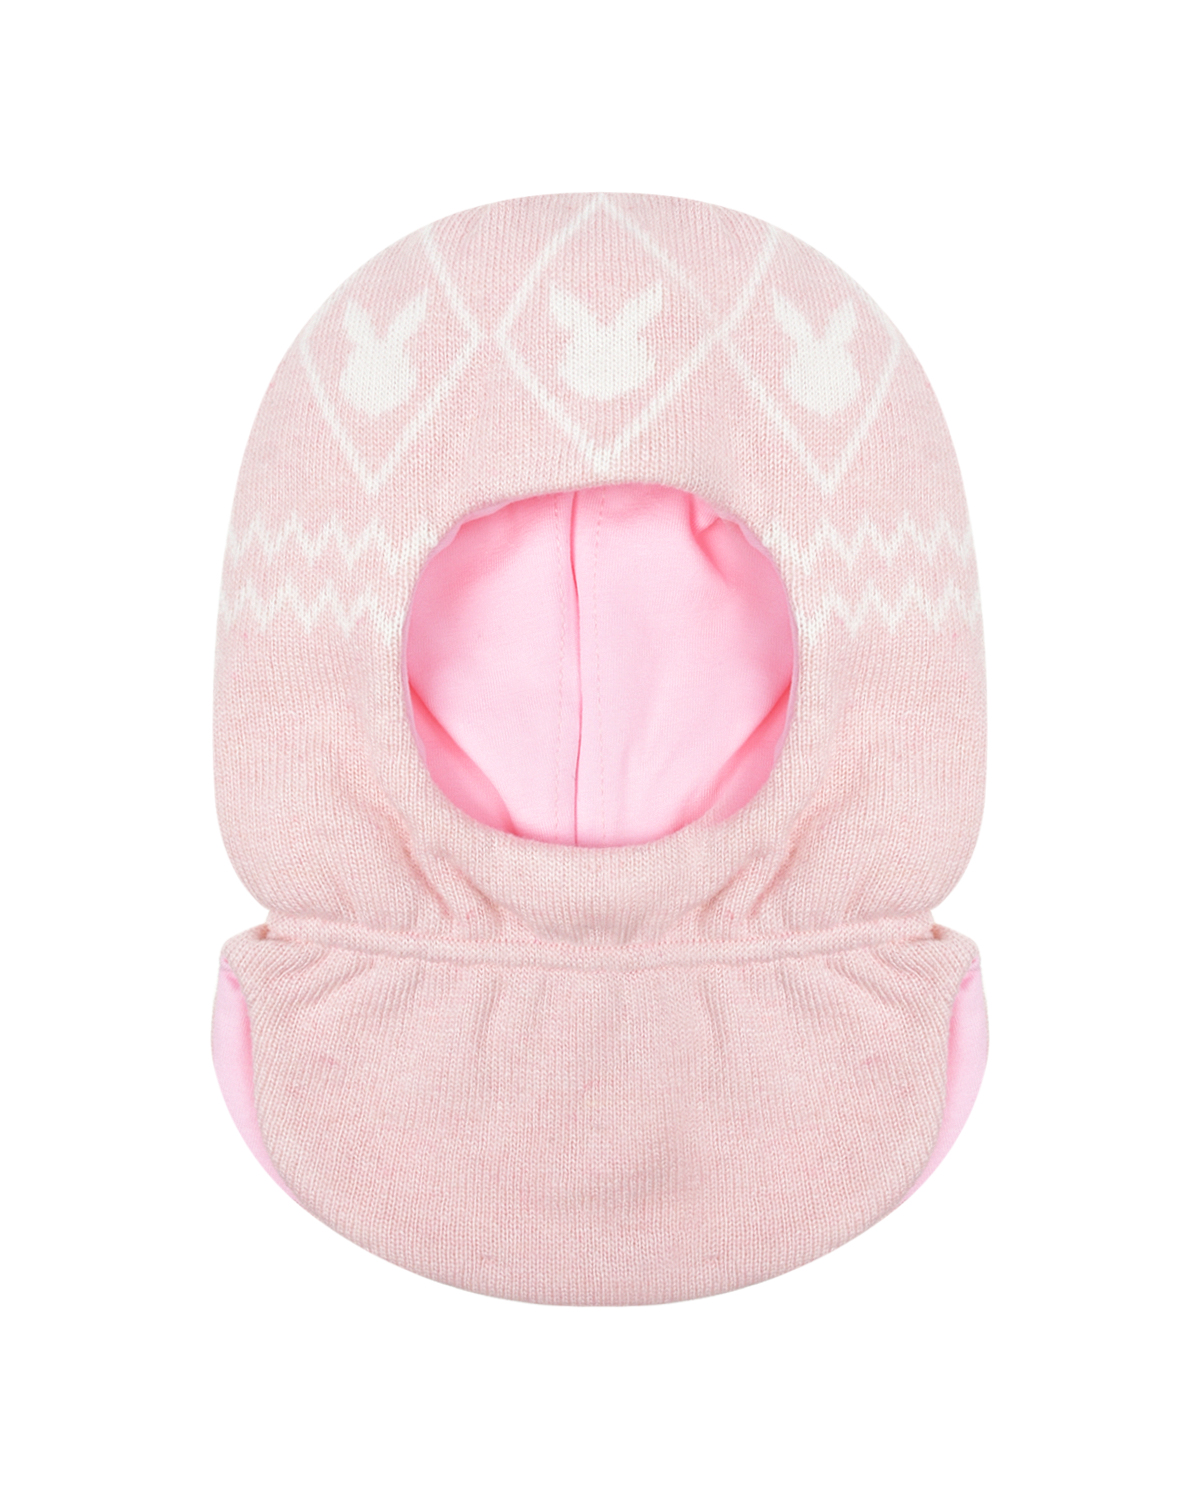 Розовая шапка-шлем с принтом "белые зайцы" Chobi детская, размер 49, цвет розовый